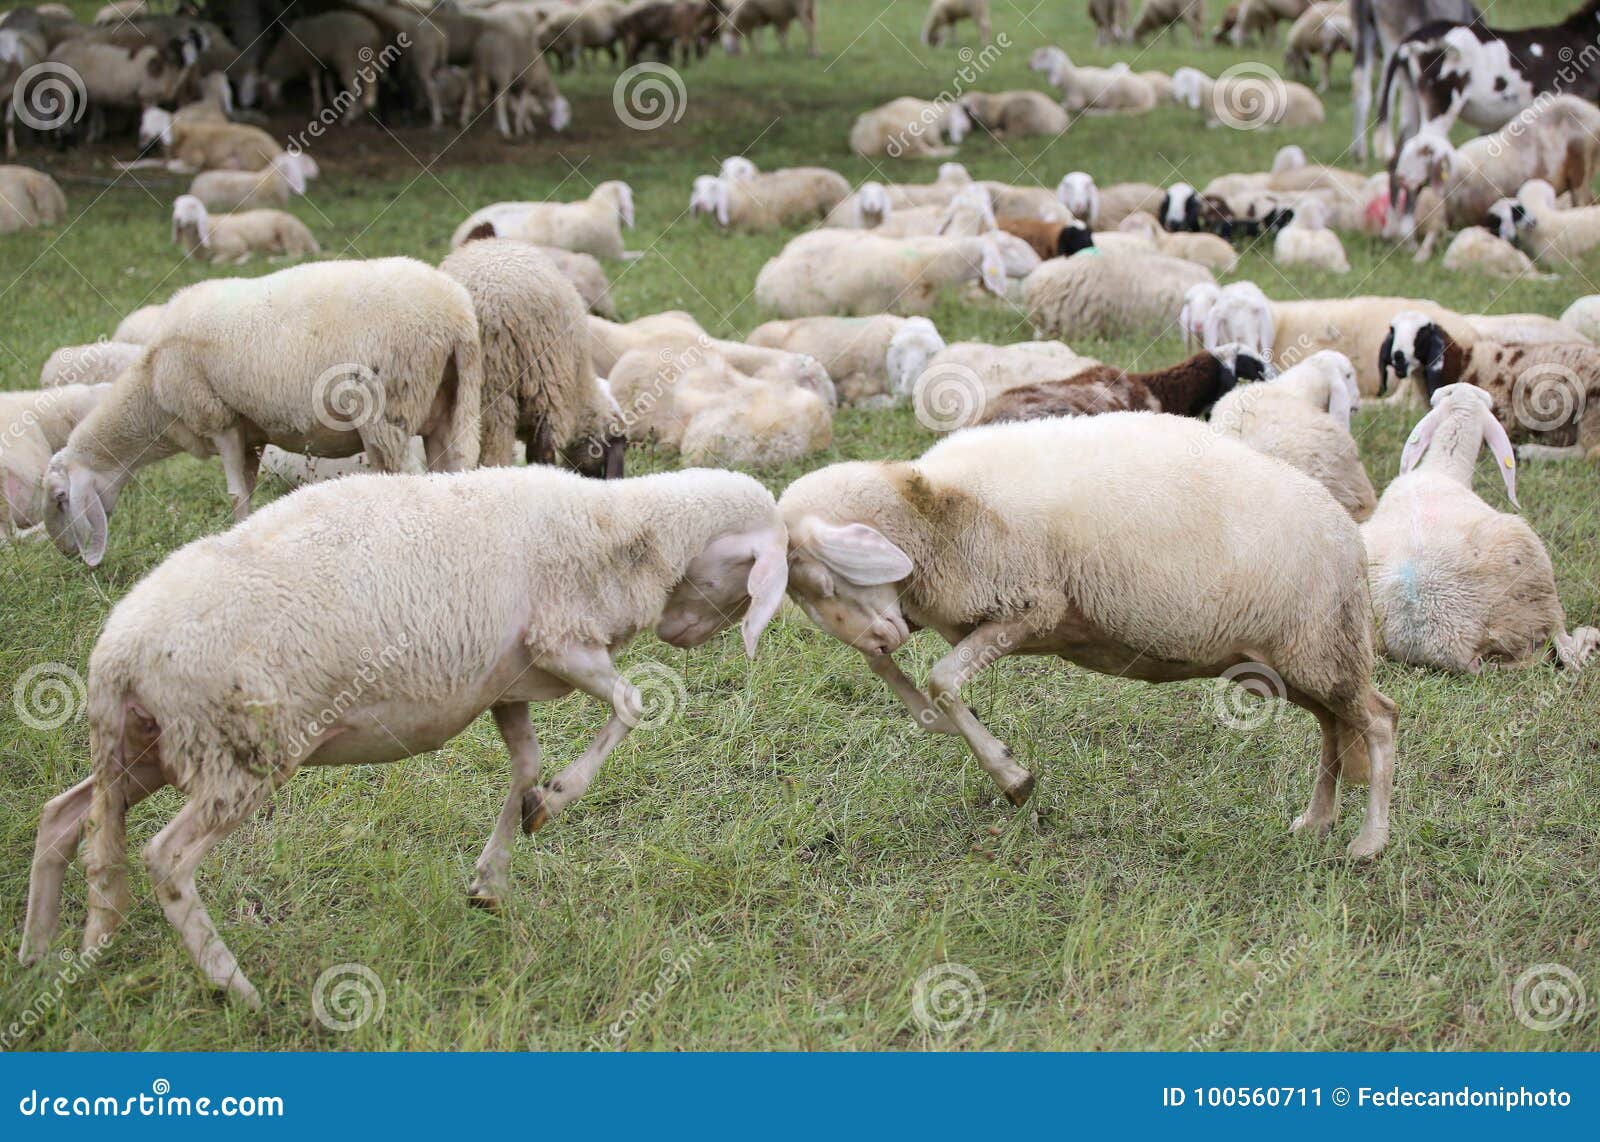 sheep with woolen veil clash headlong